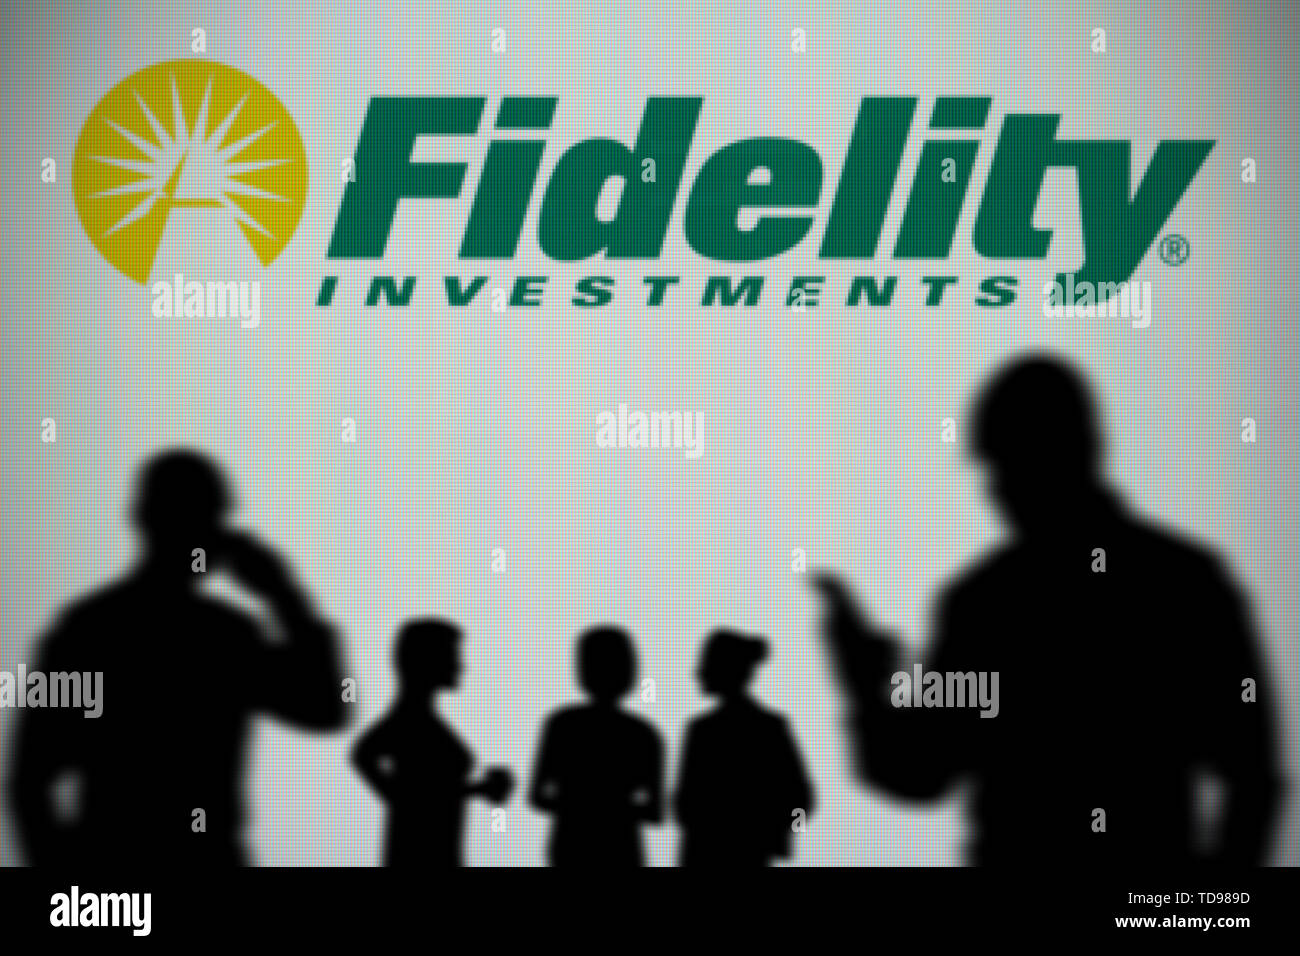 La Fidelity Investments logo è visibile su uno schermo a LED in background mentre si profila una persona utilizza uno smartphone (solo uso editoriale) Foto Stock